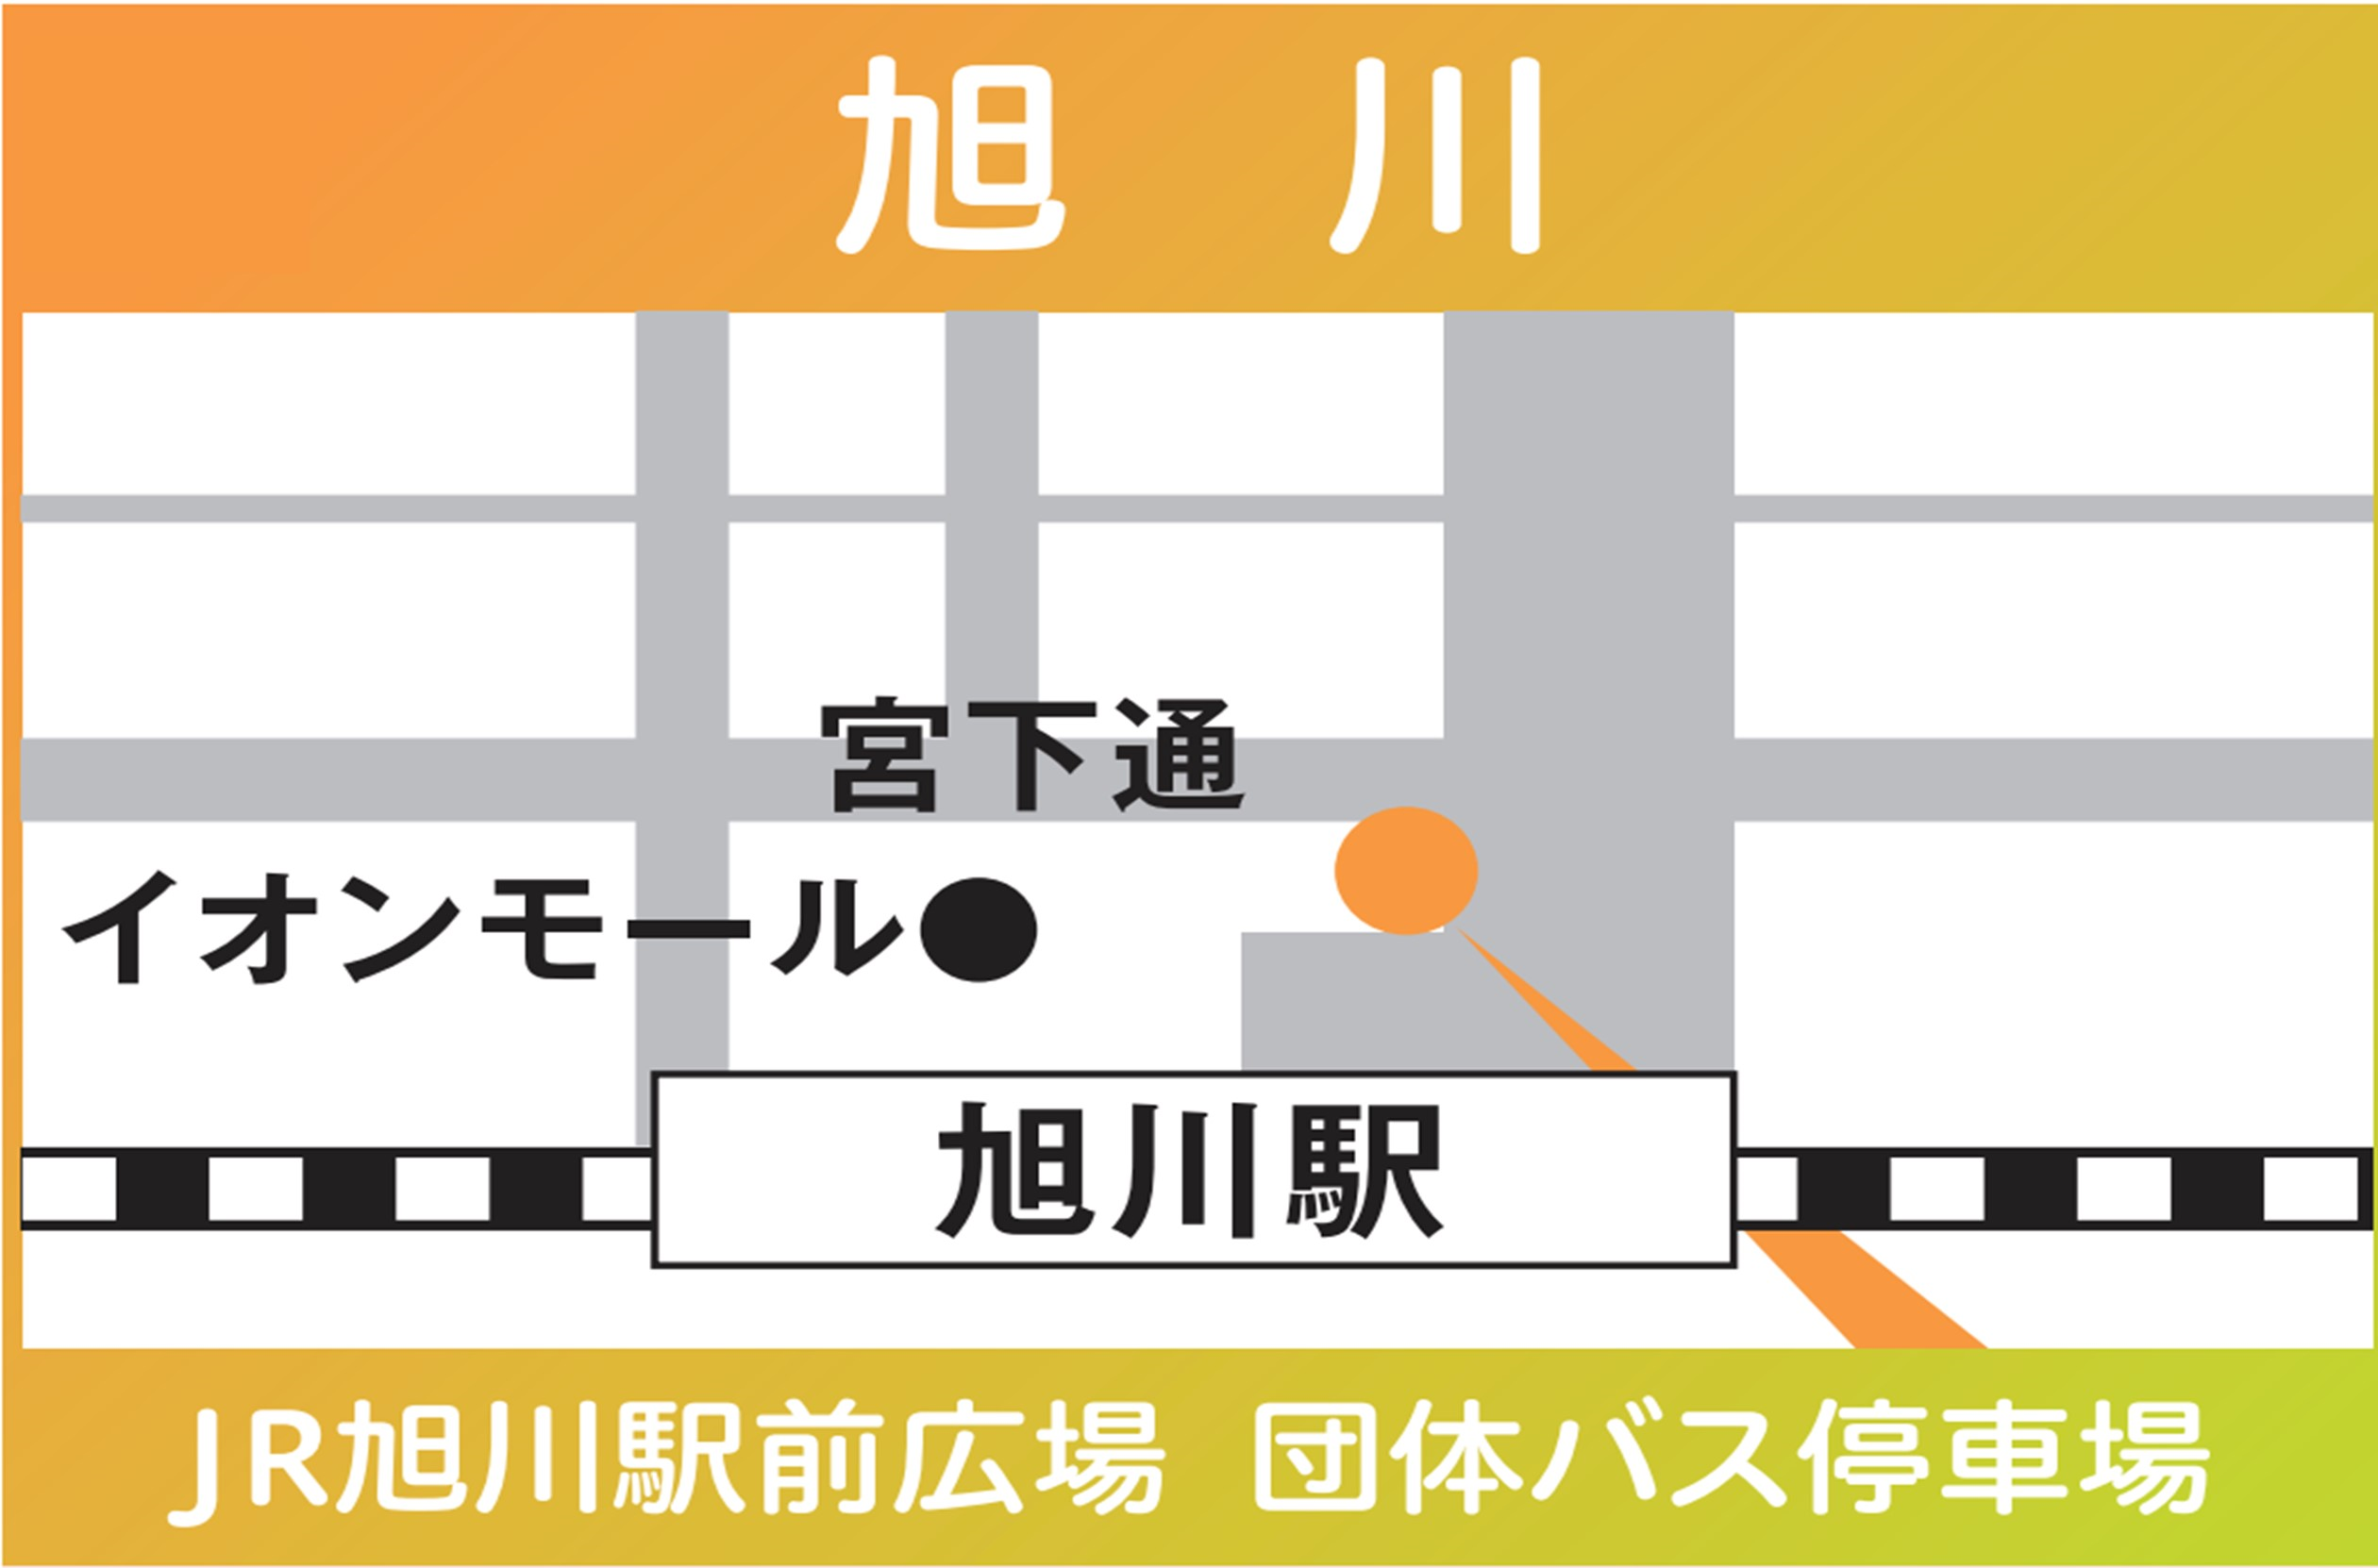 地図：旭川(旭川駅広場 団体バス停車所）※2024年3/30㈯限定運行